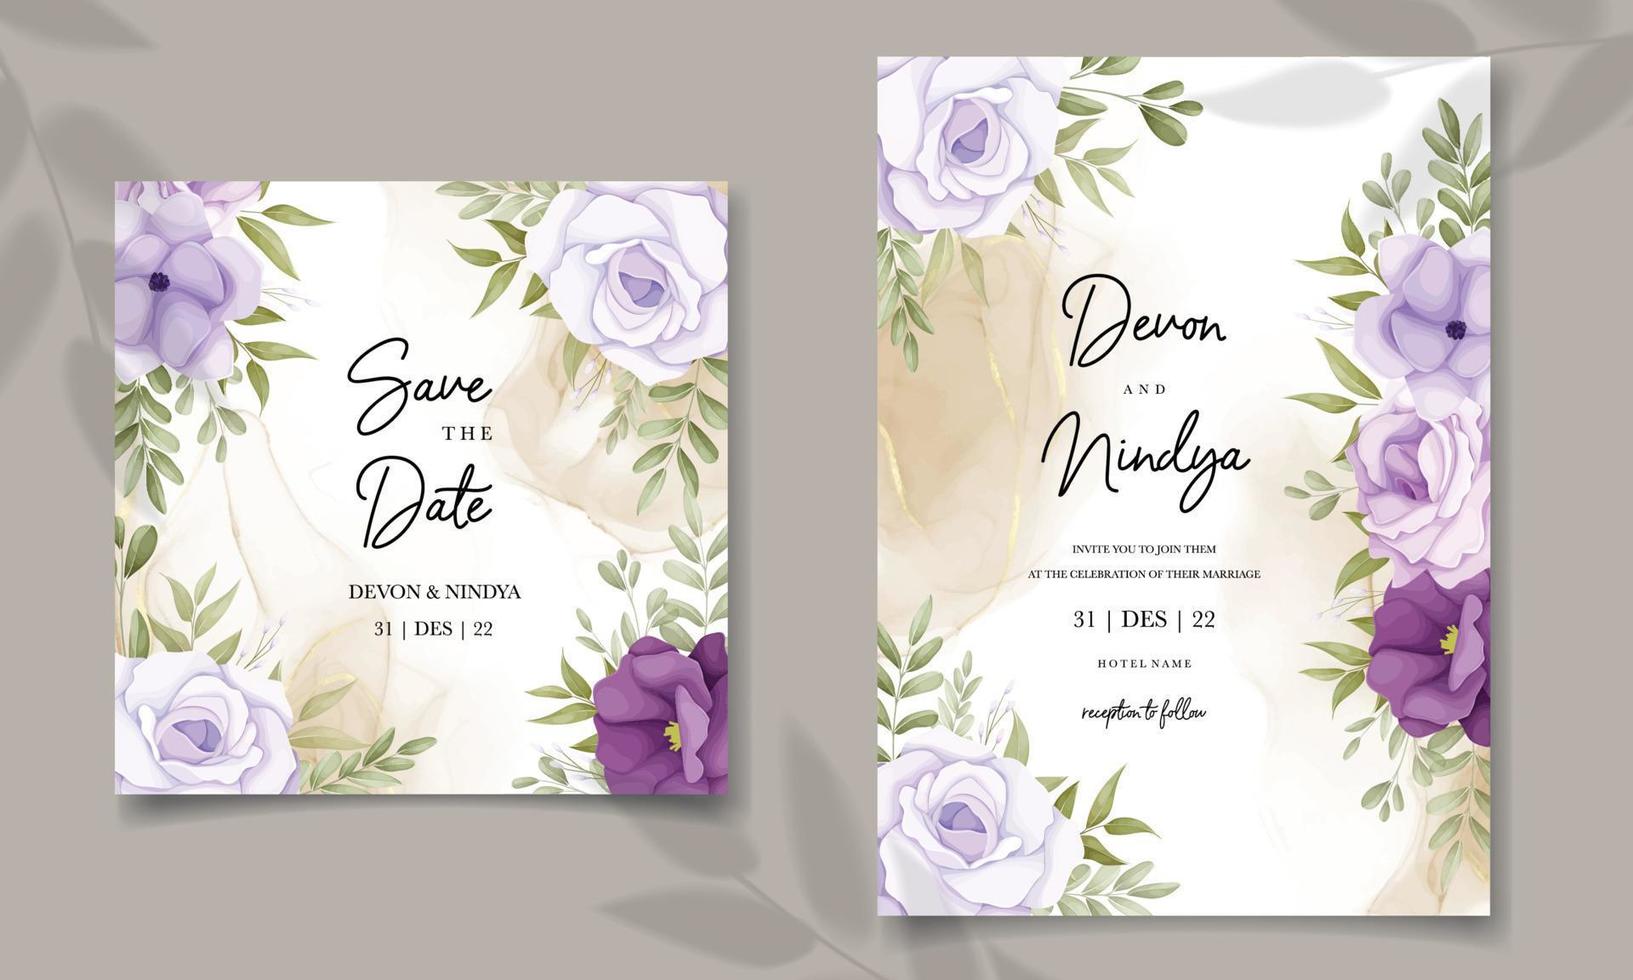 carte d'invitation de mariage élégante avec décoration de fleurs violettes vecteur